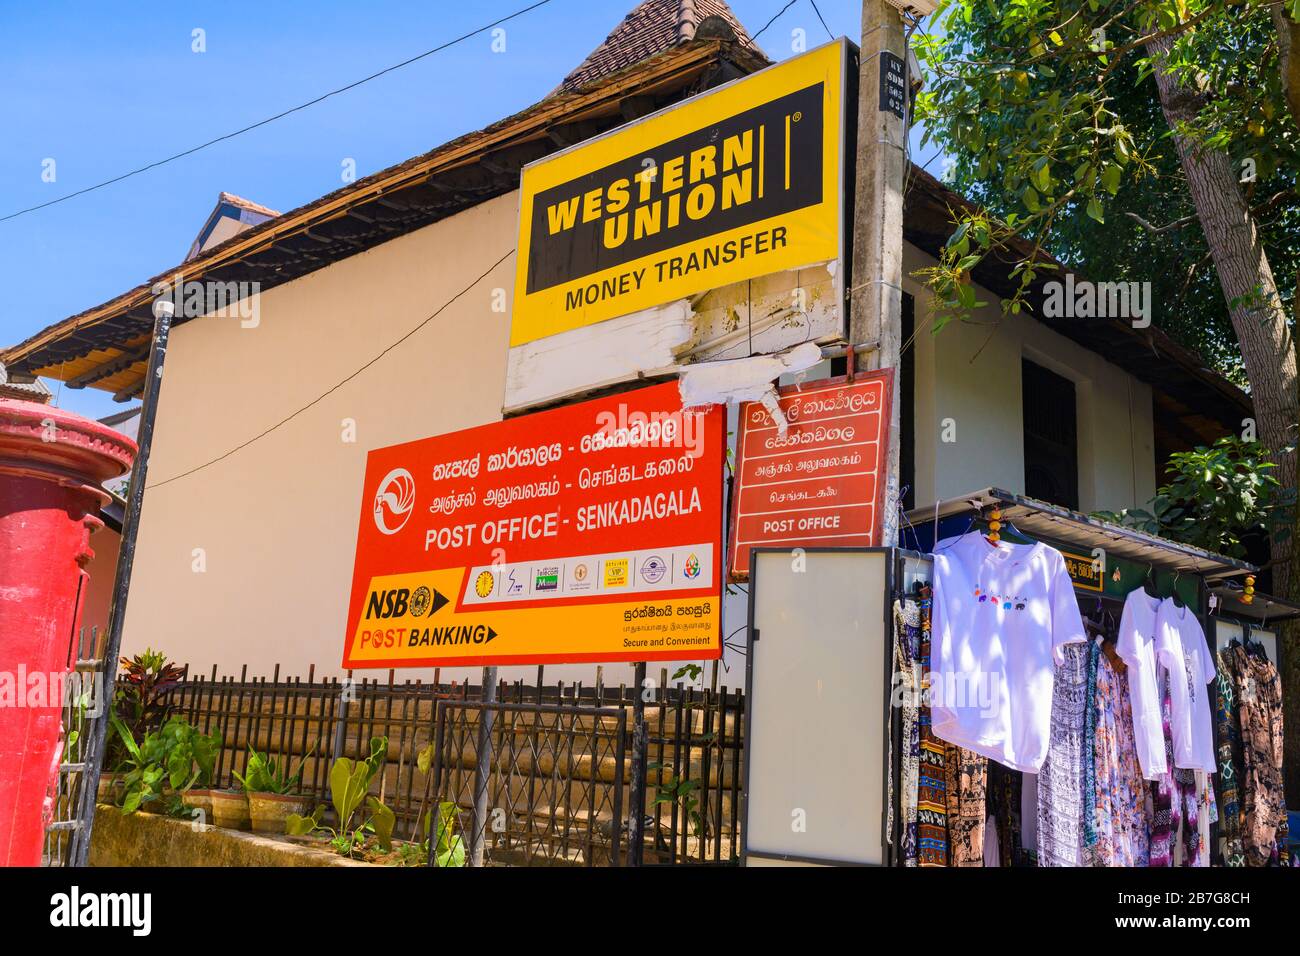 Asie du Sud Sri Lanka Kandy Sinhala Province Centrale ancienne capitale  transfert d'argent Western Union poste bureau de poste Senkadagala rouge  boîte aux lettres de vêtements de décrochage Photo Stock - Alamy